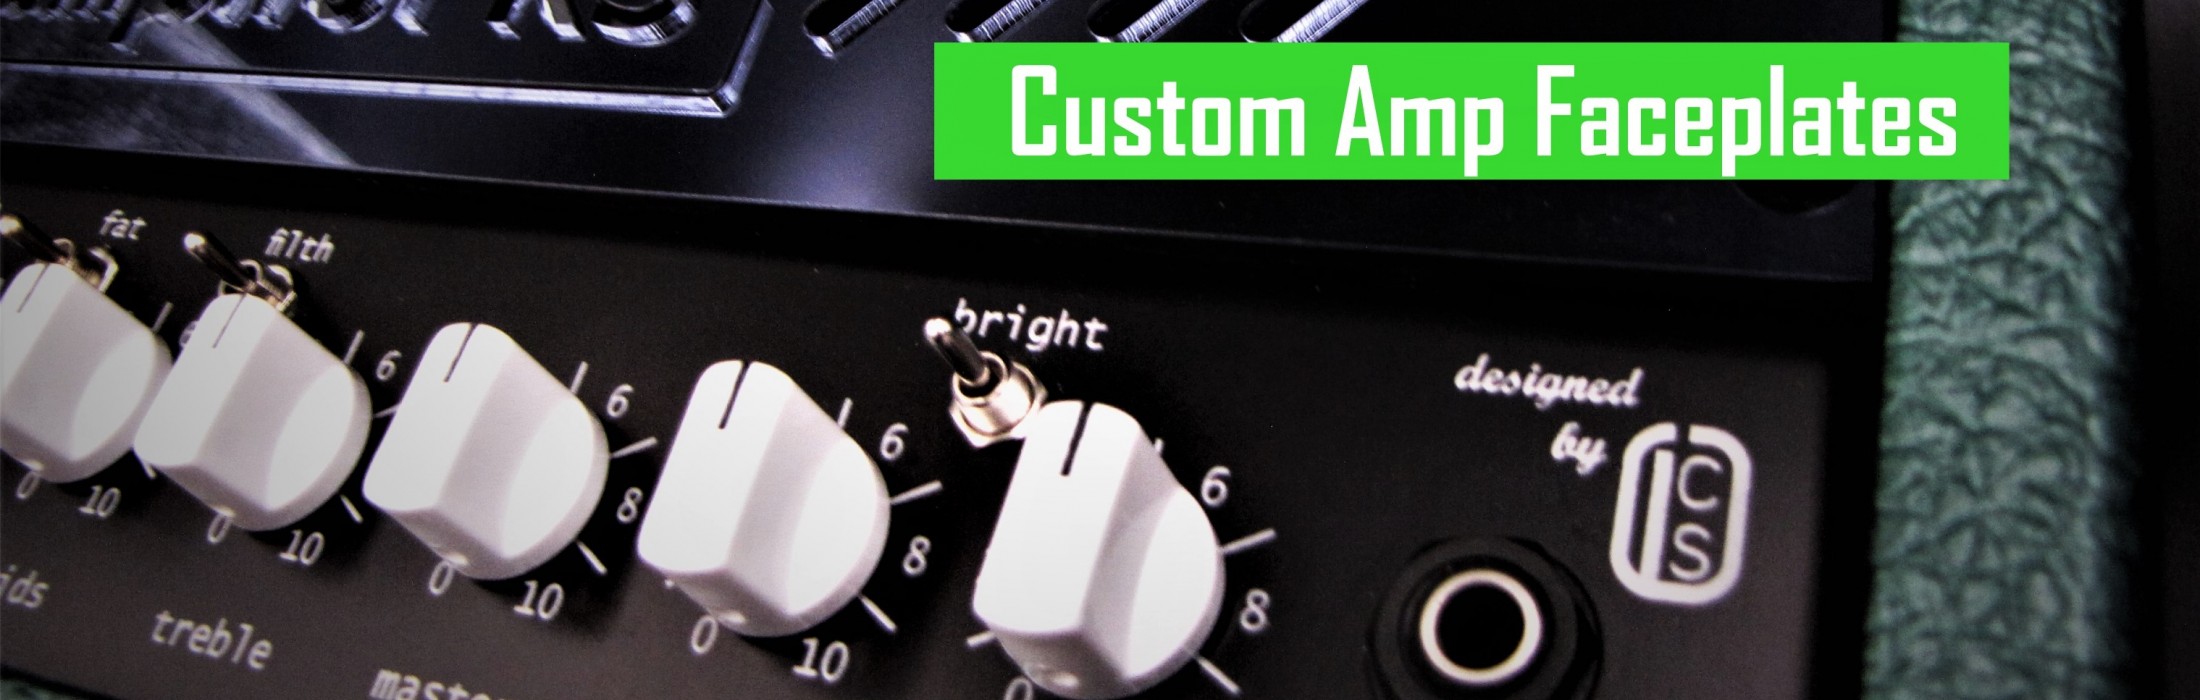 Custom Amp Faceplates